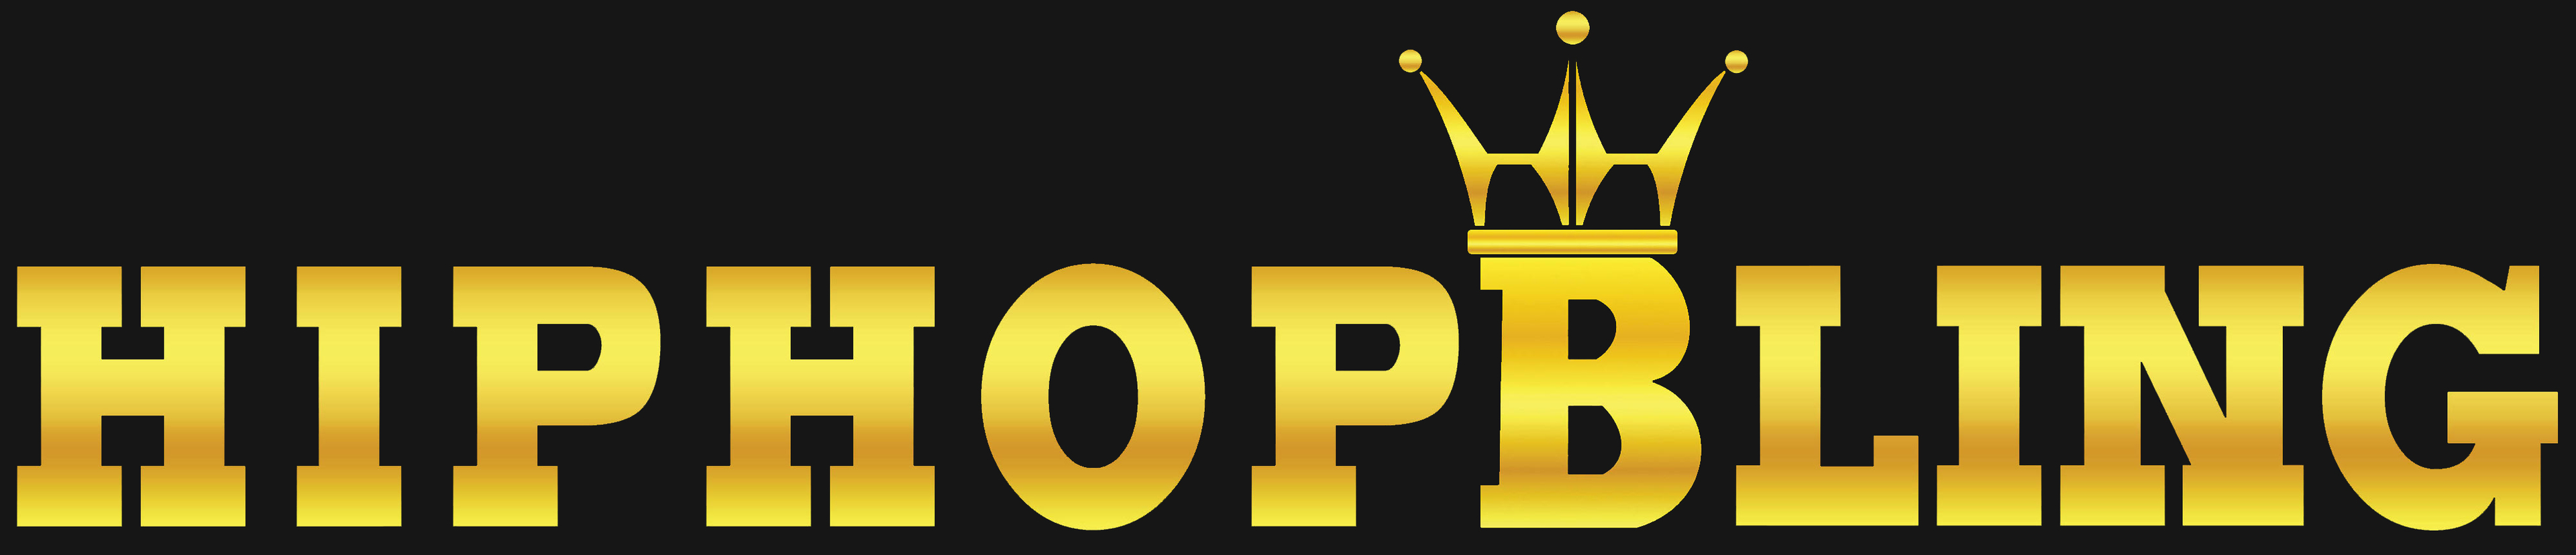 Hip Hop Bling logo